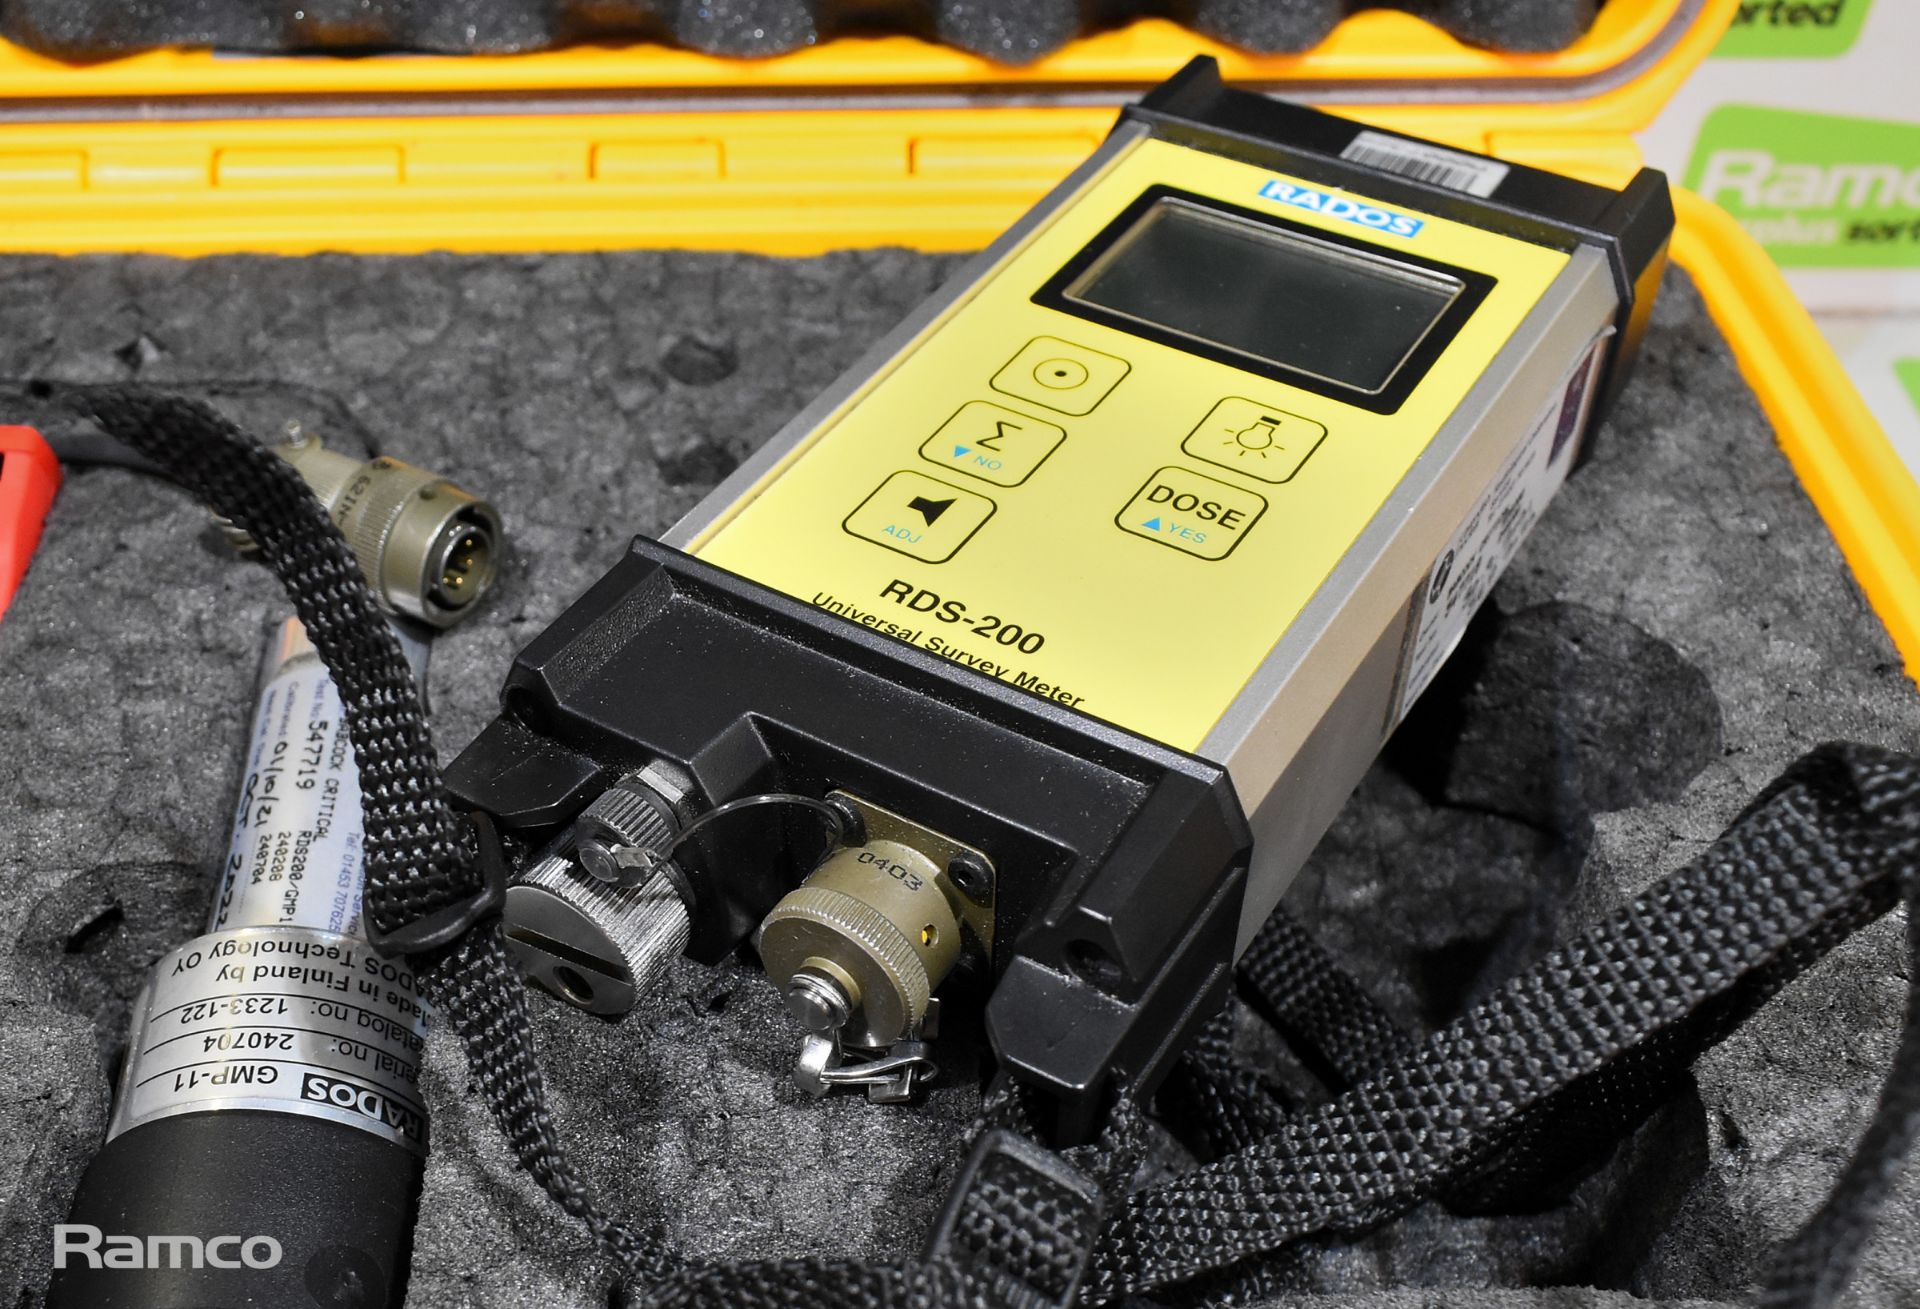 Rados RDS-200 universal survey meter, Rados GMP-11 sensor, 2x Siemens MK2.3 dosimeters - Image 4 of 9